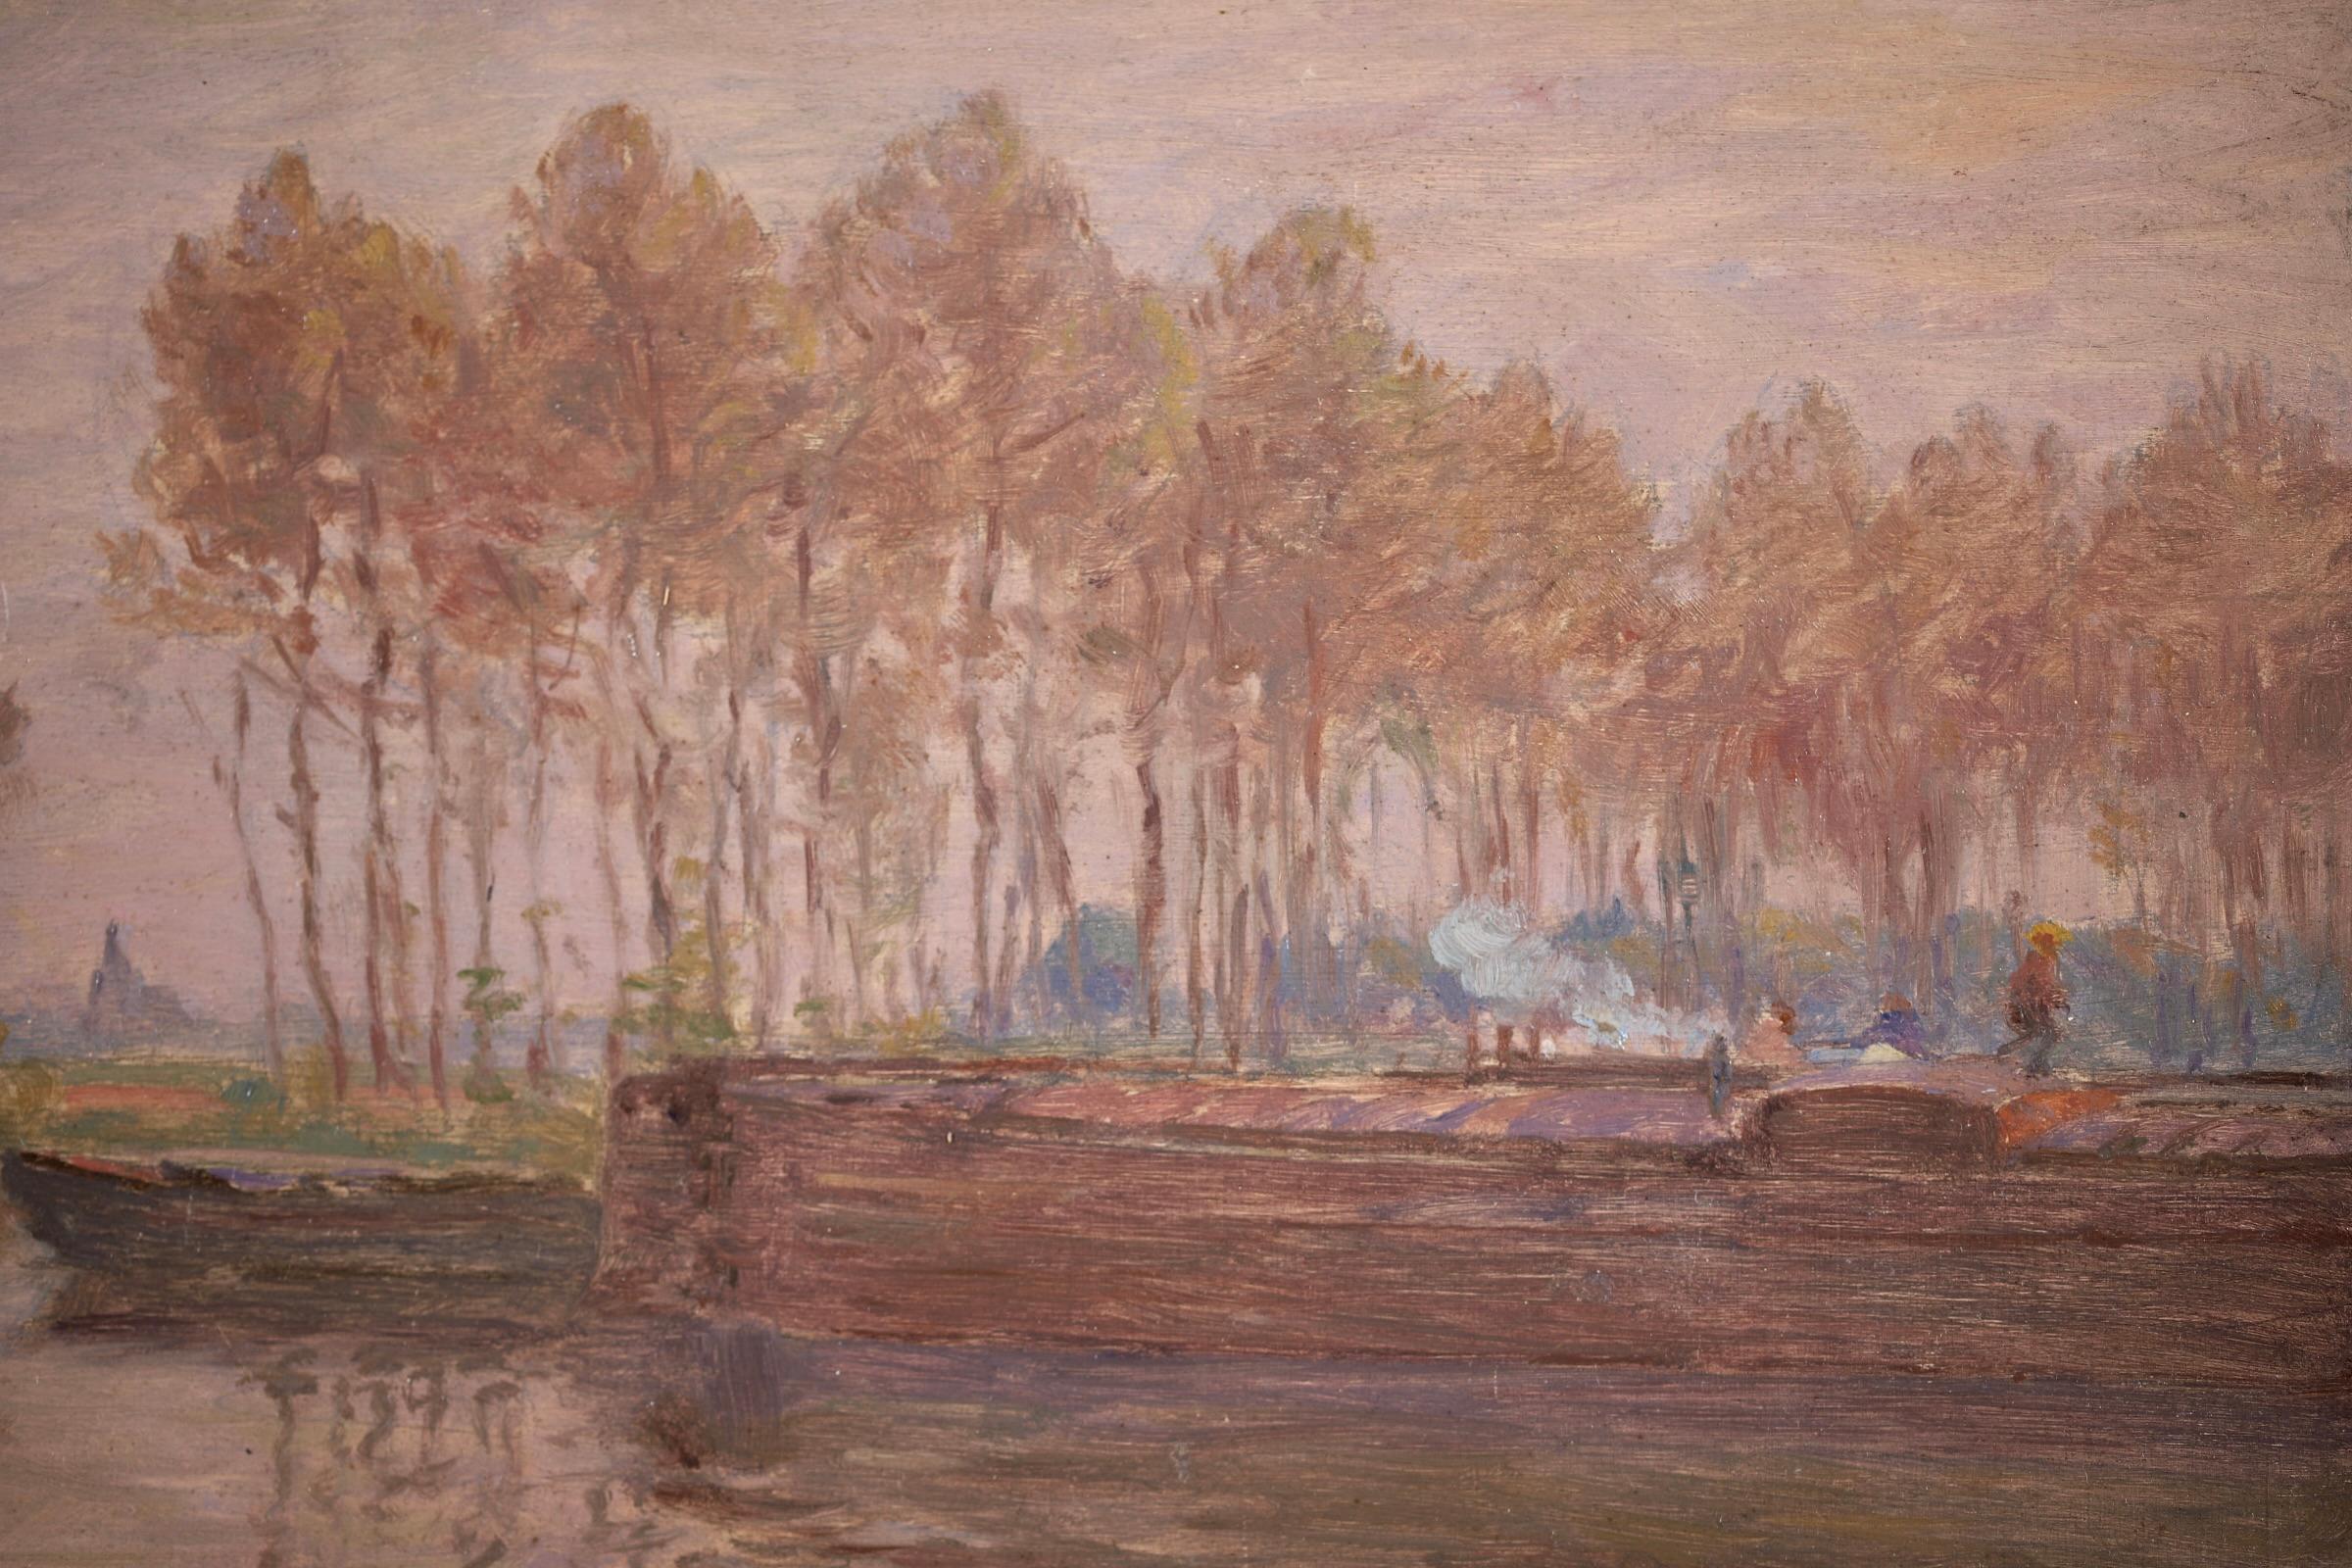 Barges on the River - Impressionist Oil, Boats in Landscape by Henri Duhem 2